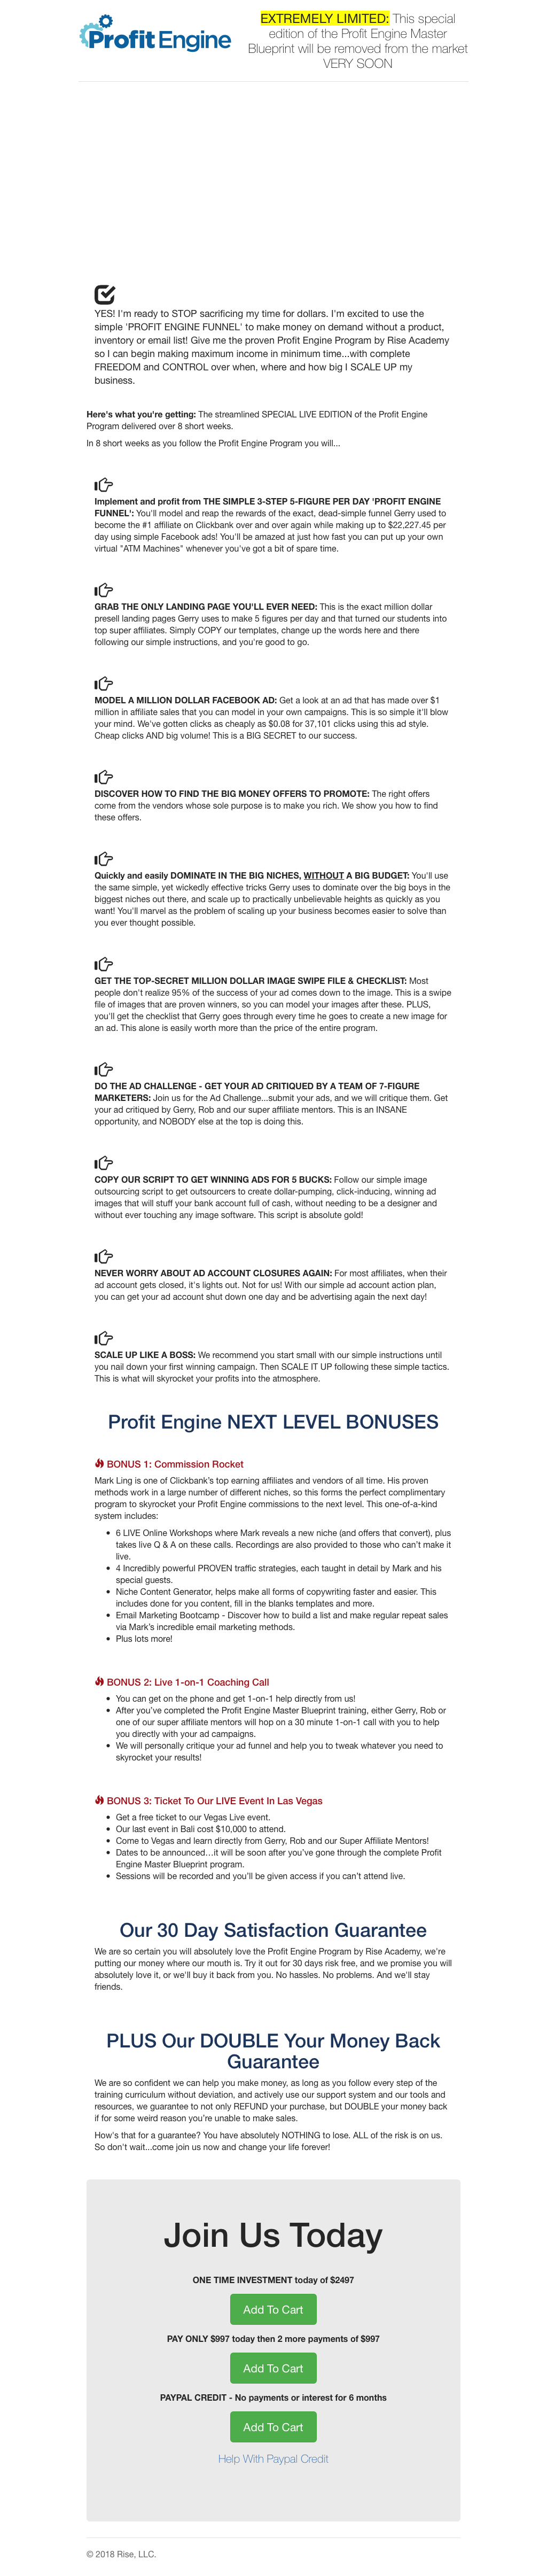 Profit Engine Sales Letter